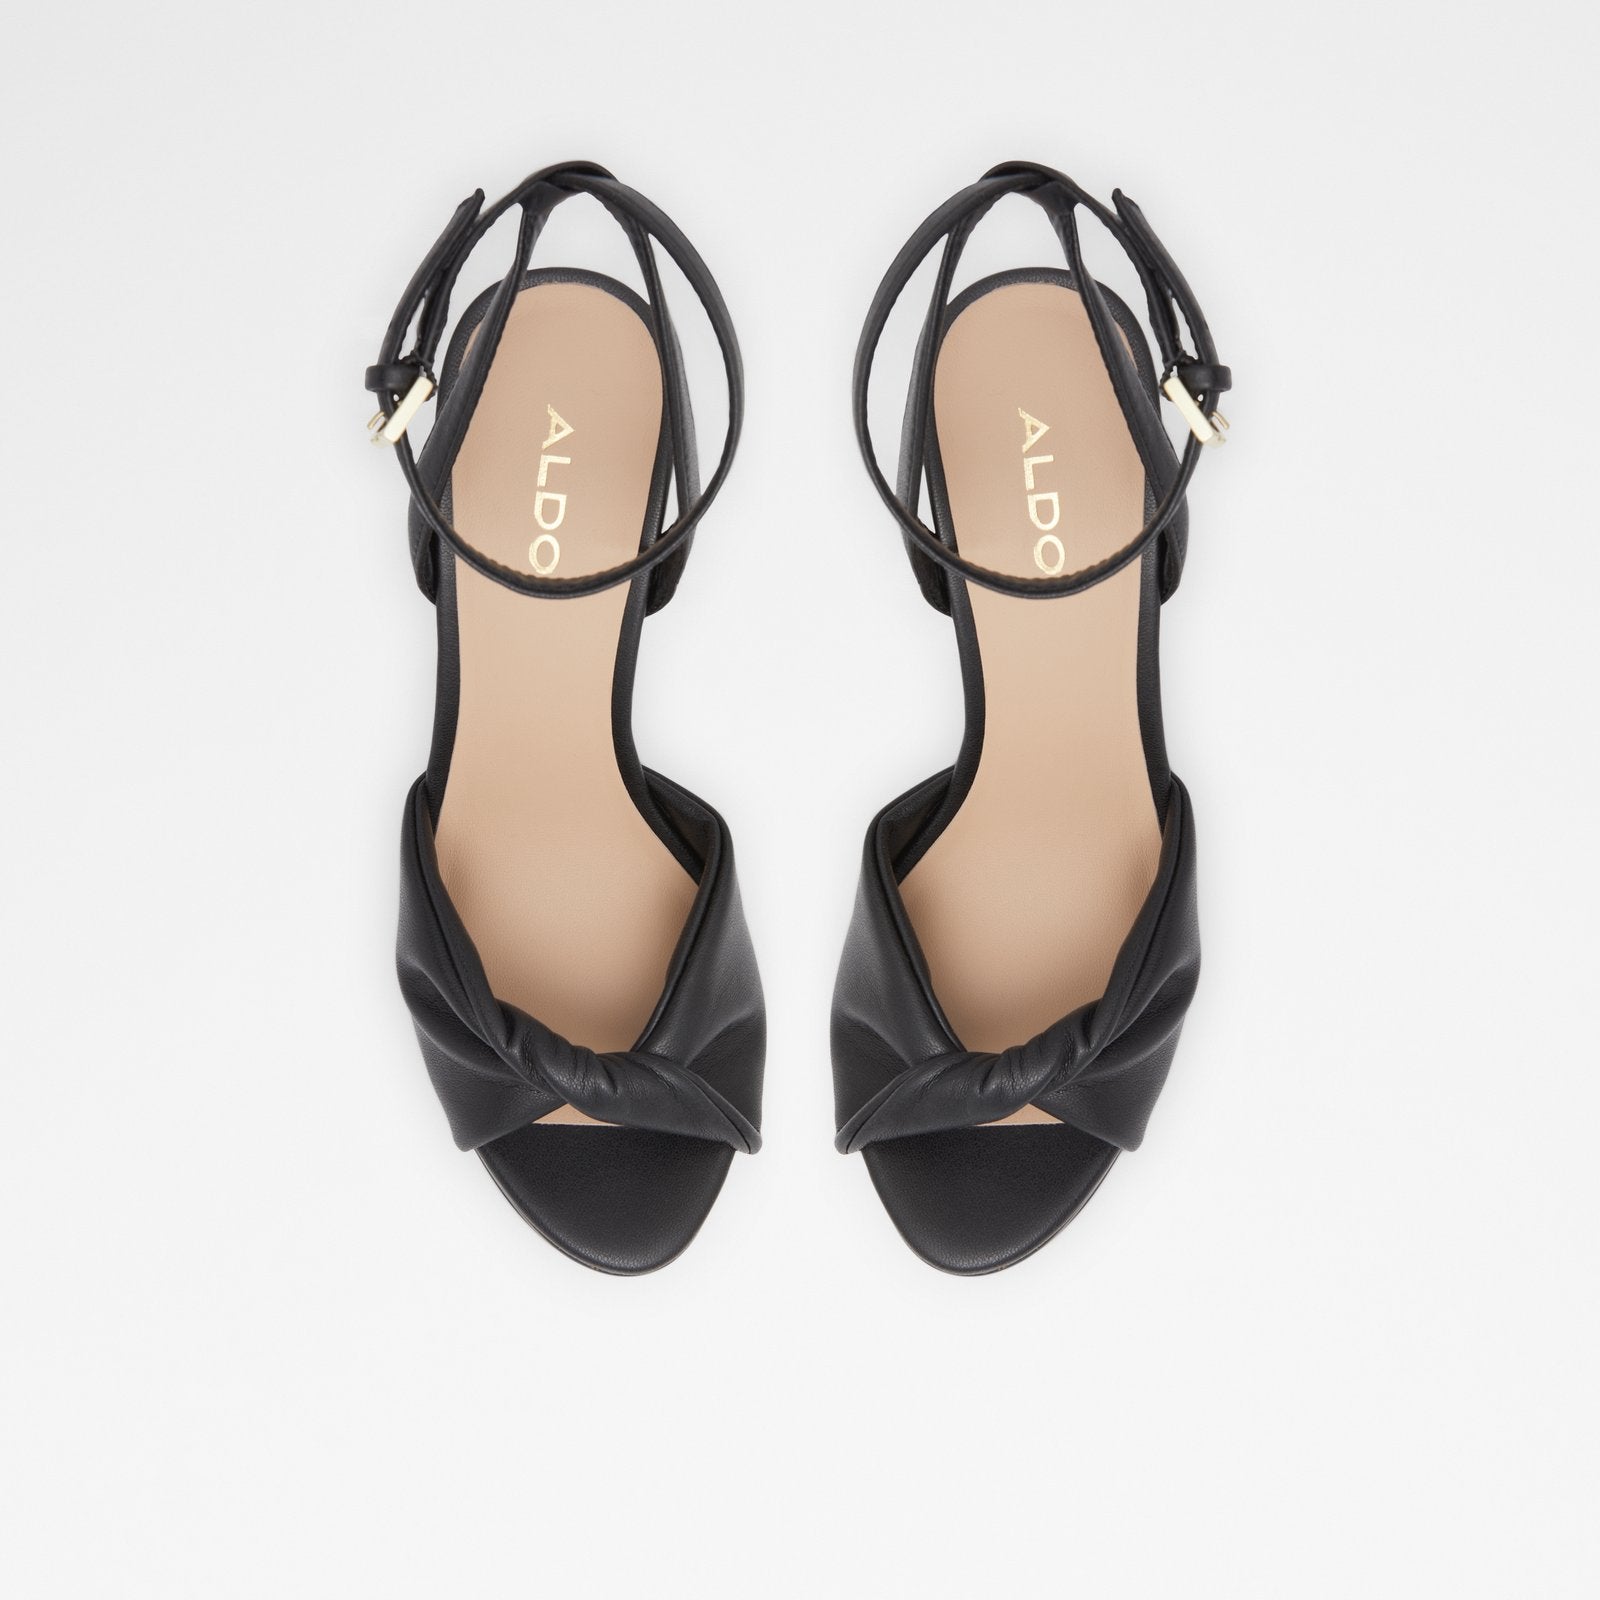 Trevena Women Shoes - Black - ALDO KSA